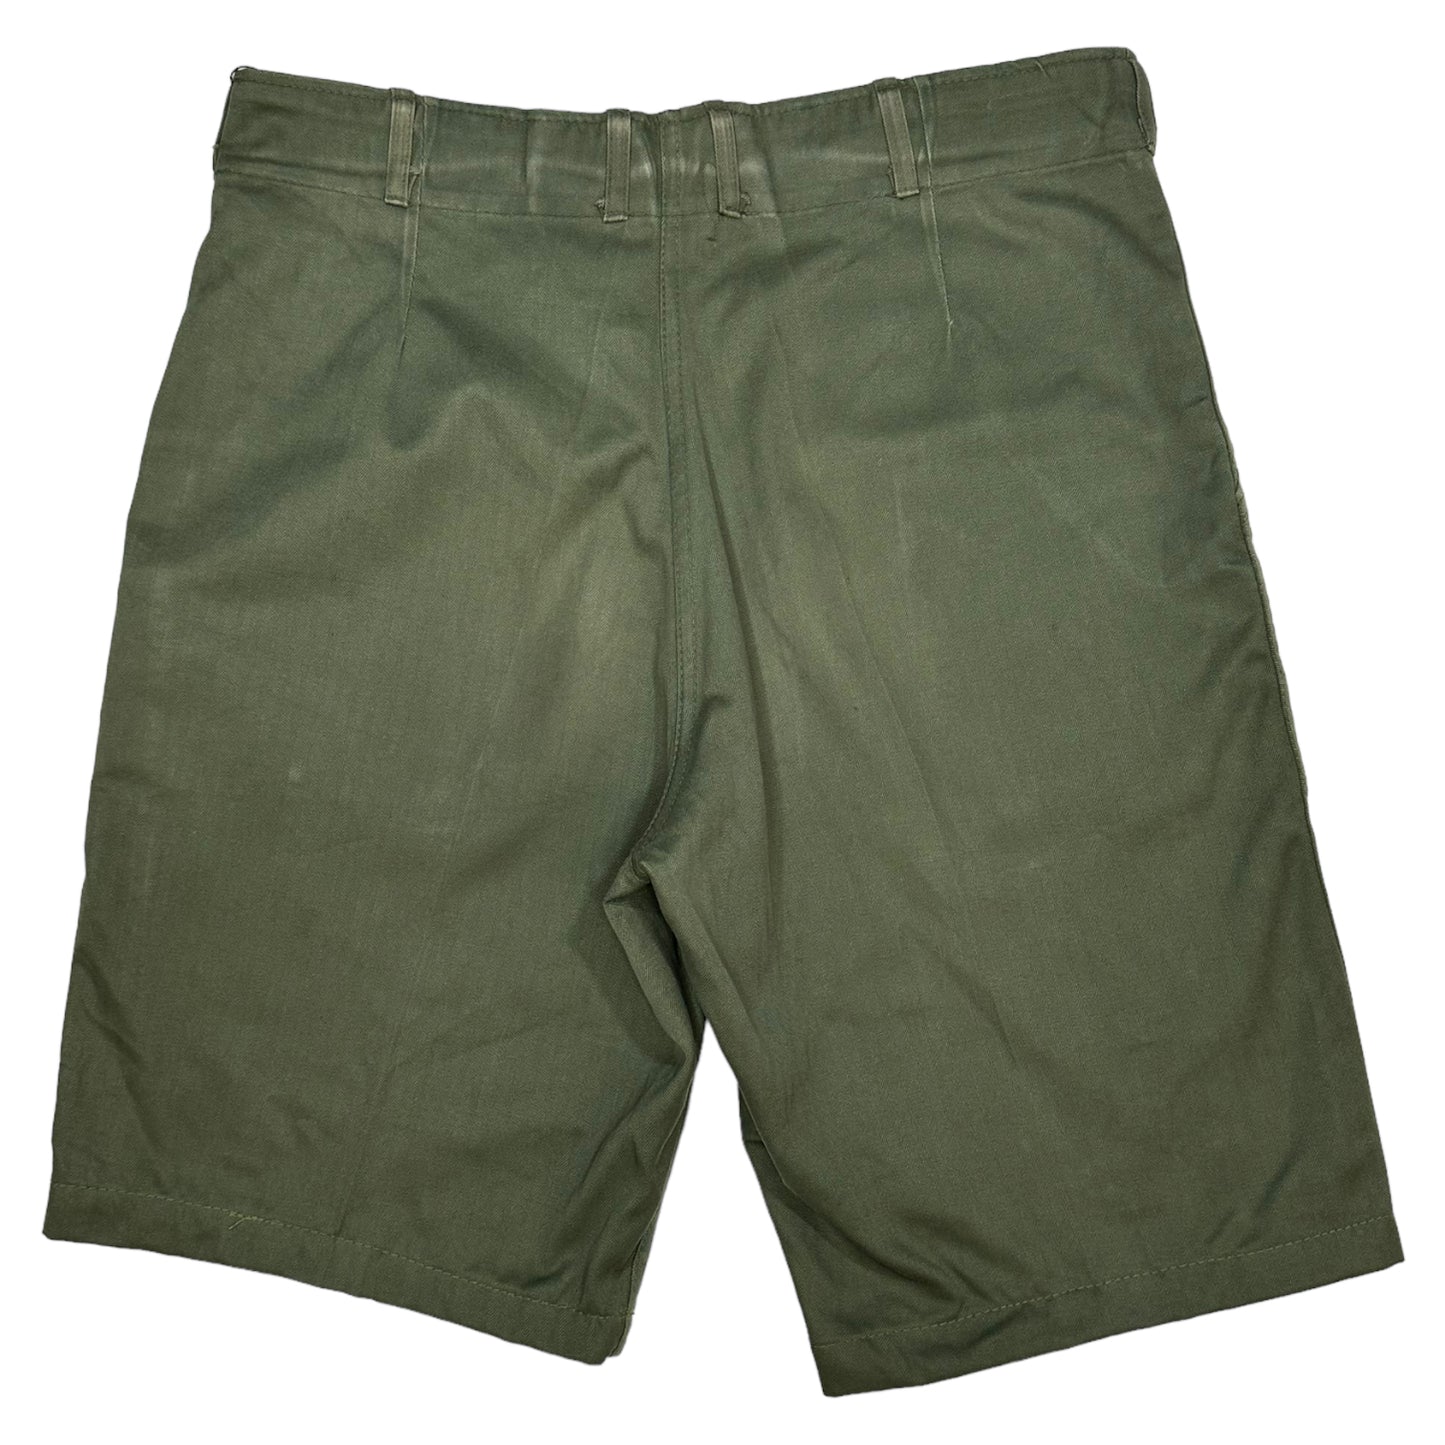 
                  
                    Vintage OG 107 Shorts - Size 34
                  
                